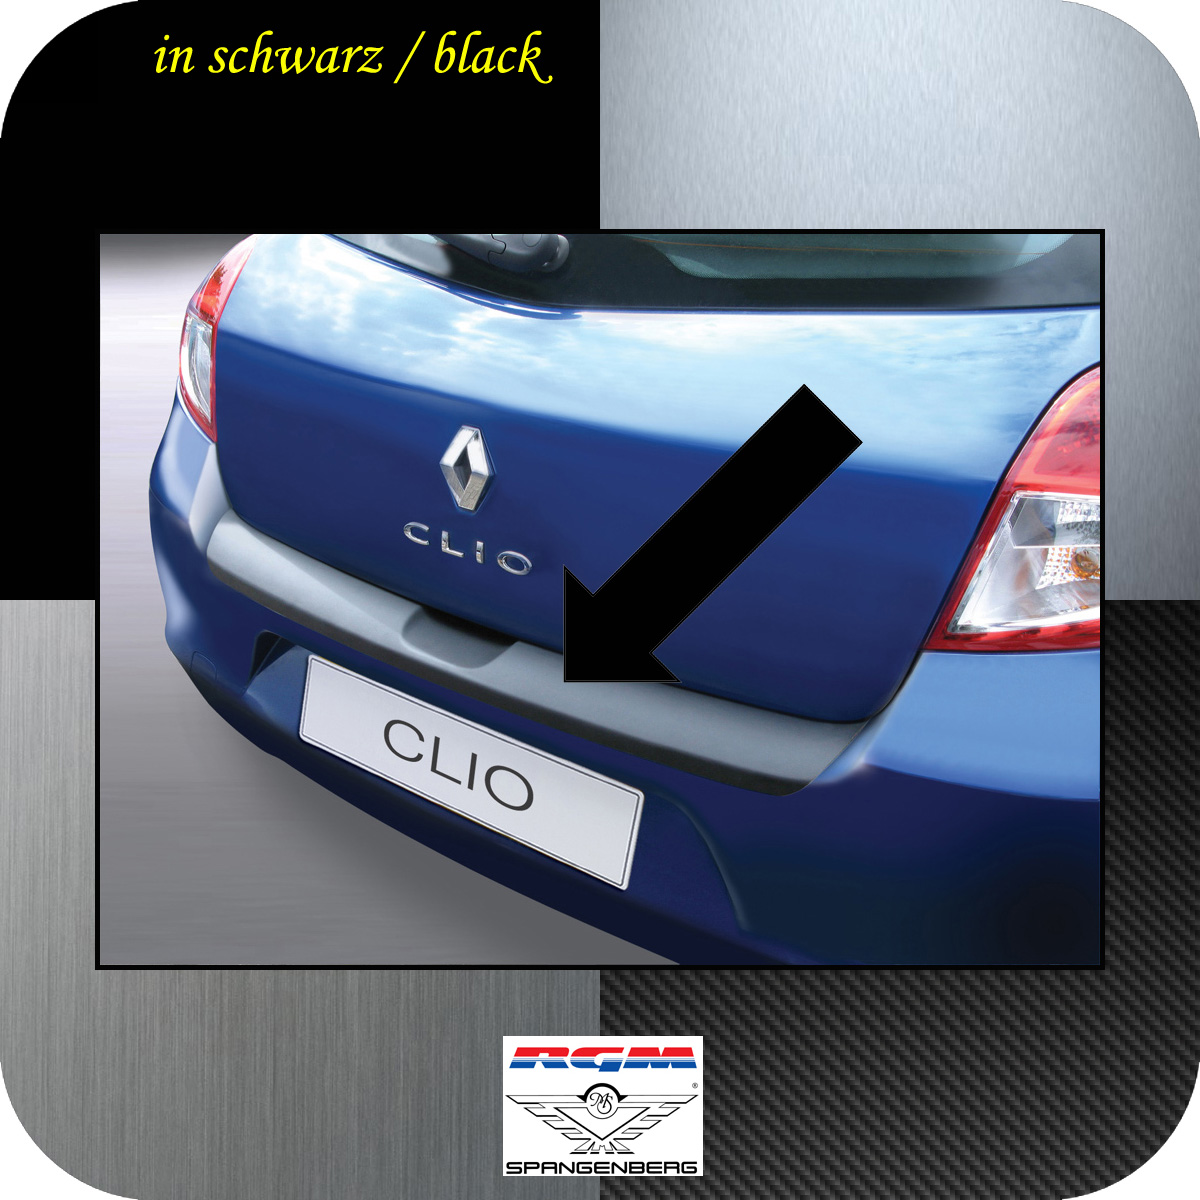 Ladekantenschutz schwarz Renault Clio 3 III ab facelift 2009-2012 3500471